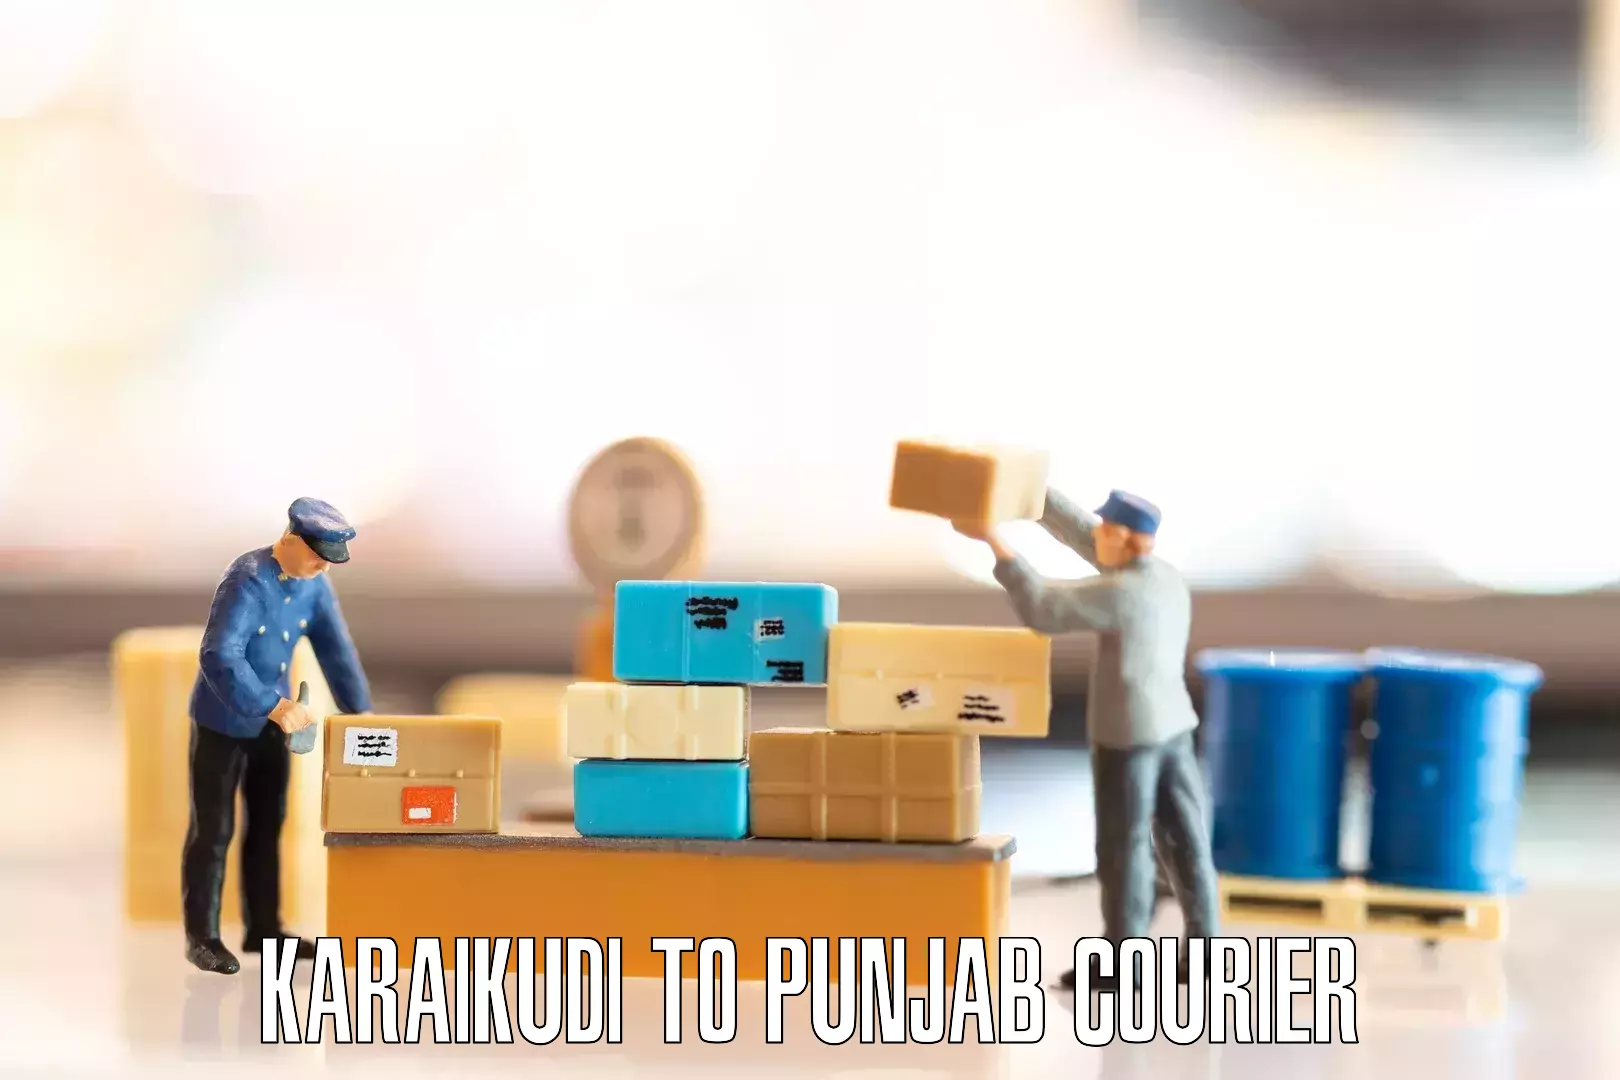 Professional furniture moving in Karaikudi to Punjab